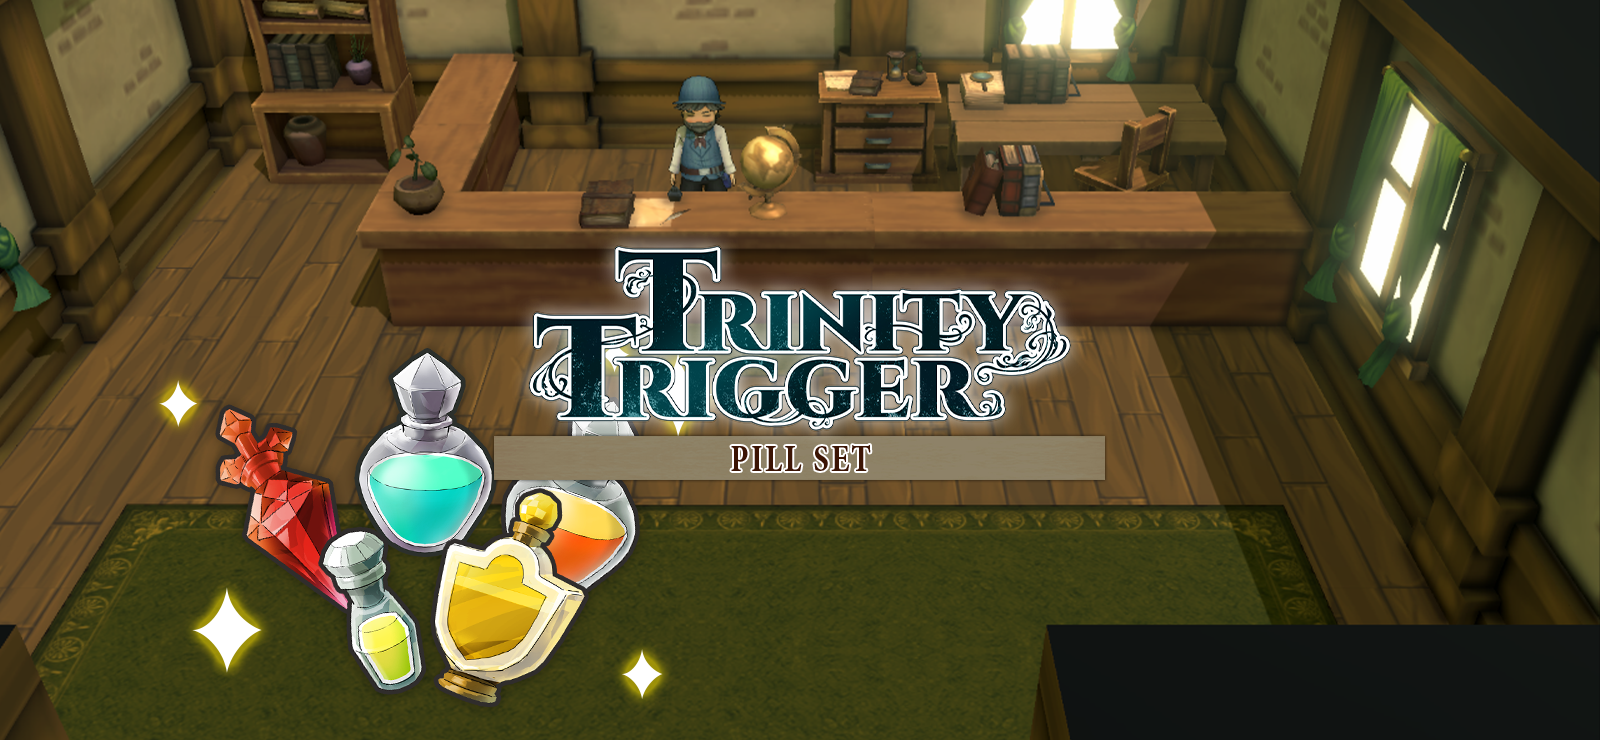 Trinity Trigger - Pill Set